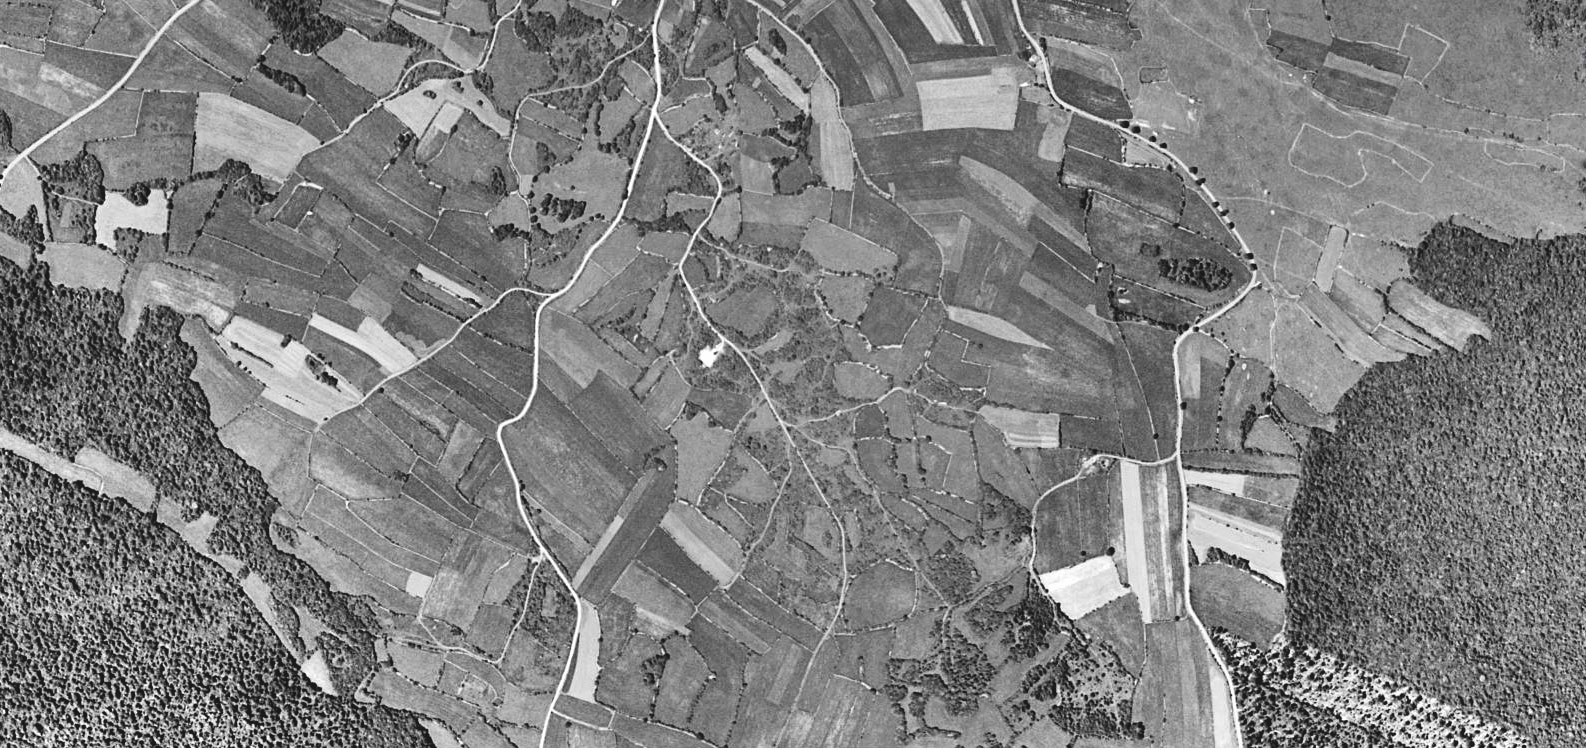 1962 : au sud de la Marre, les parcelles agricoles sont séparées par des murgers (lignes blanches visibles en vue aérienne). 